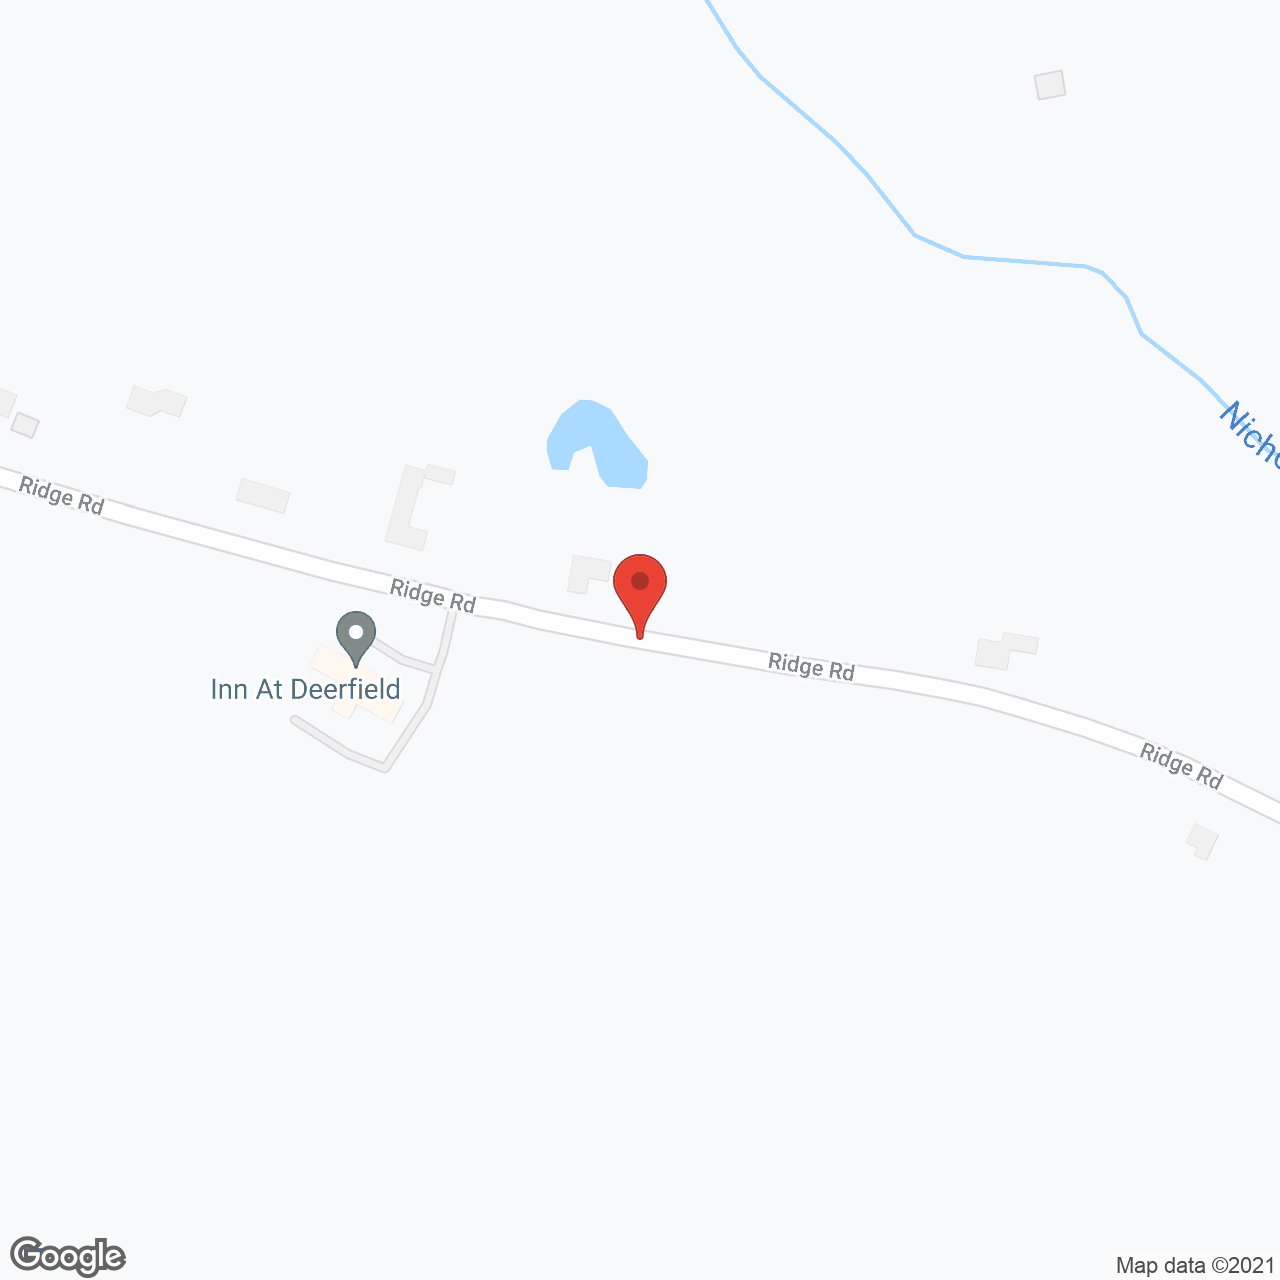 Inn At Deerfield in google map